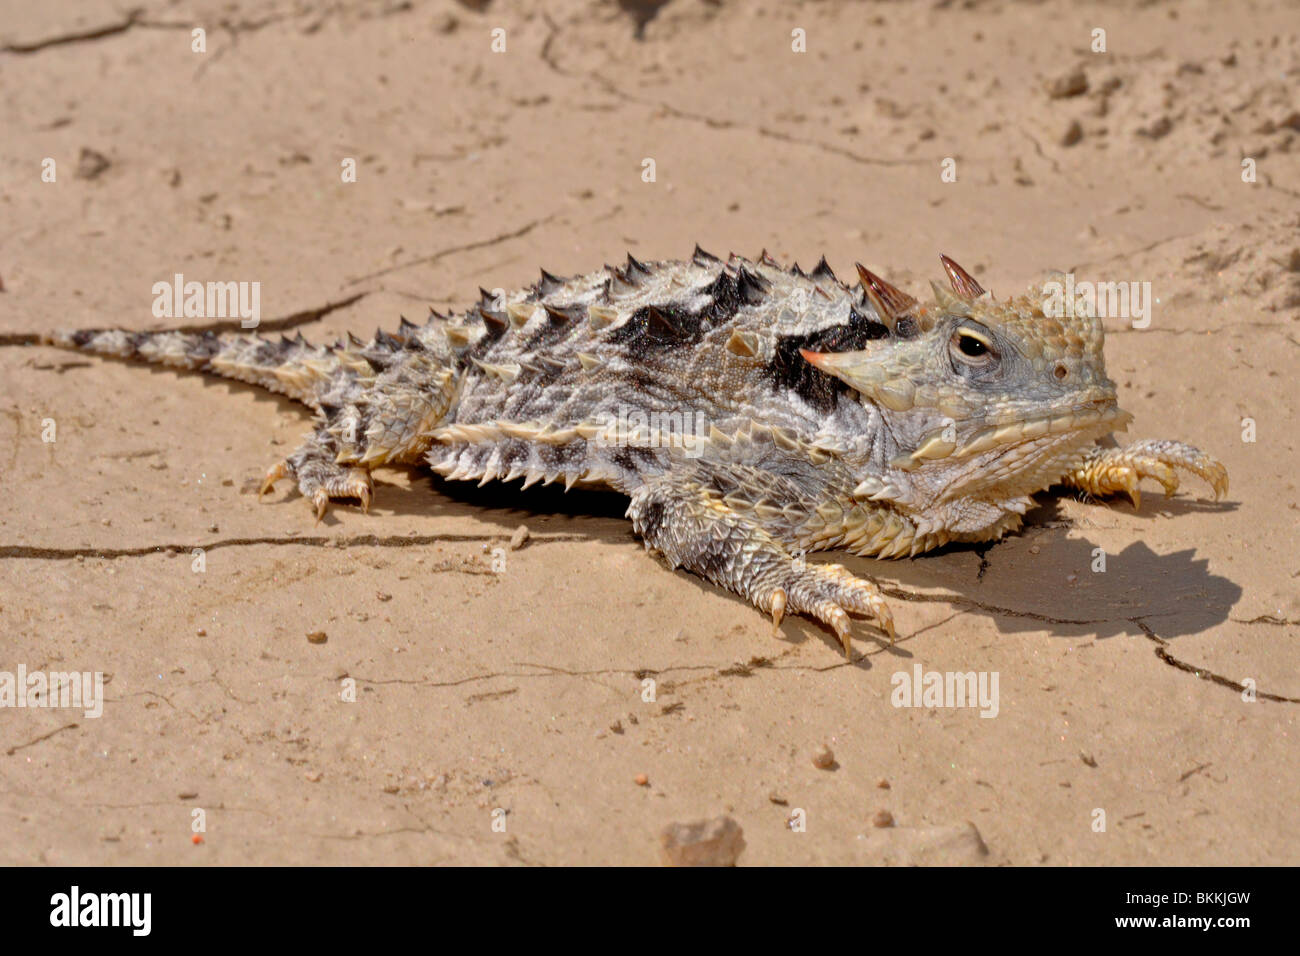 Southern desert horned lizard Stock Photo